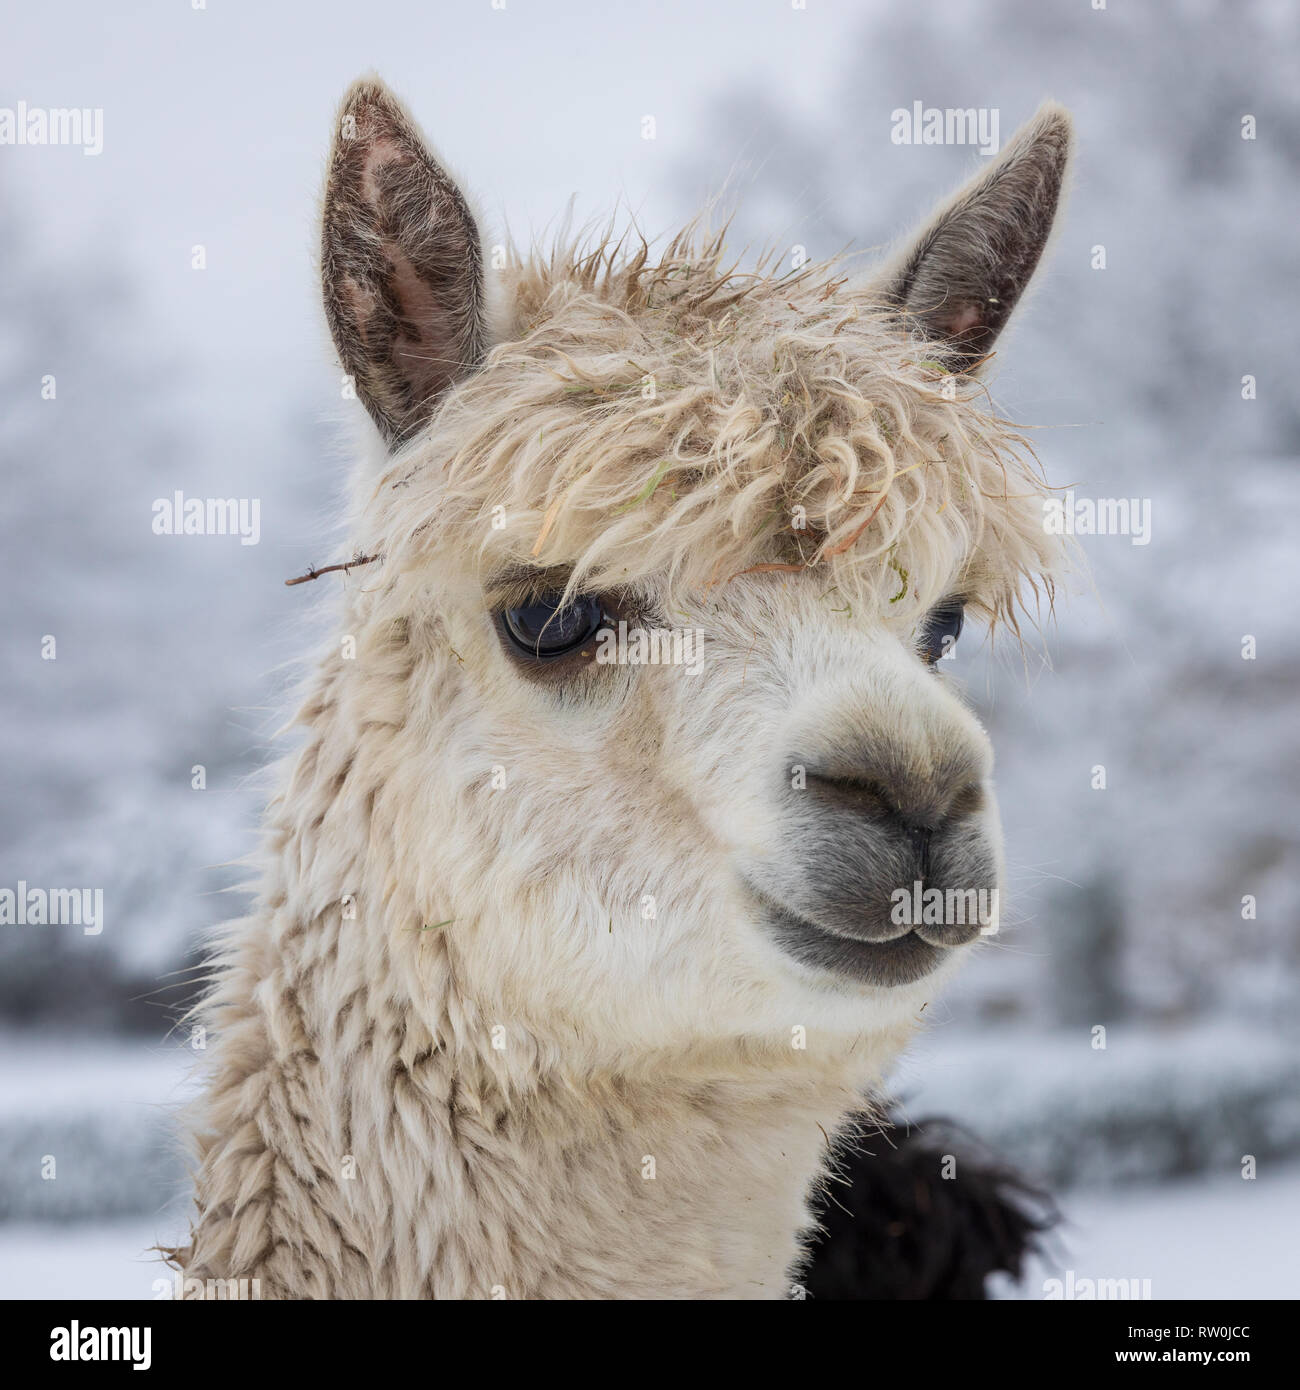 White alpaca headshot Stock Photo